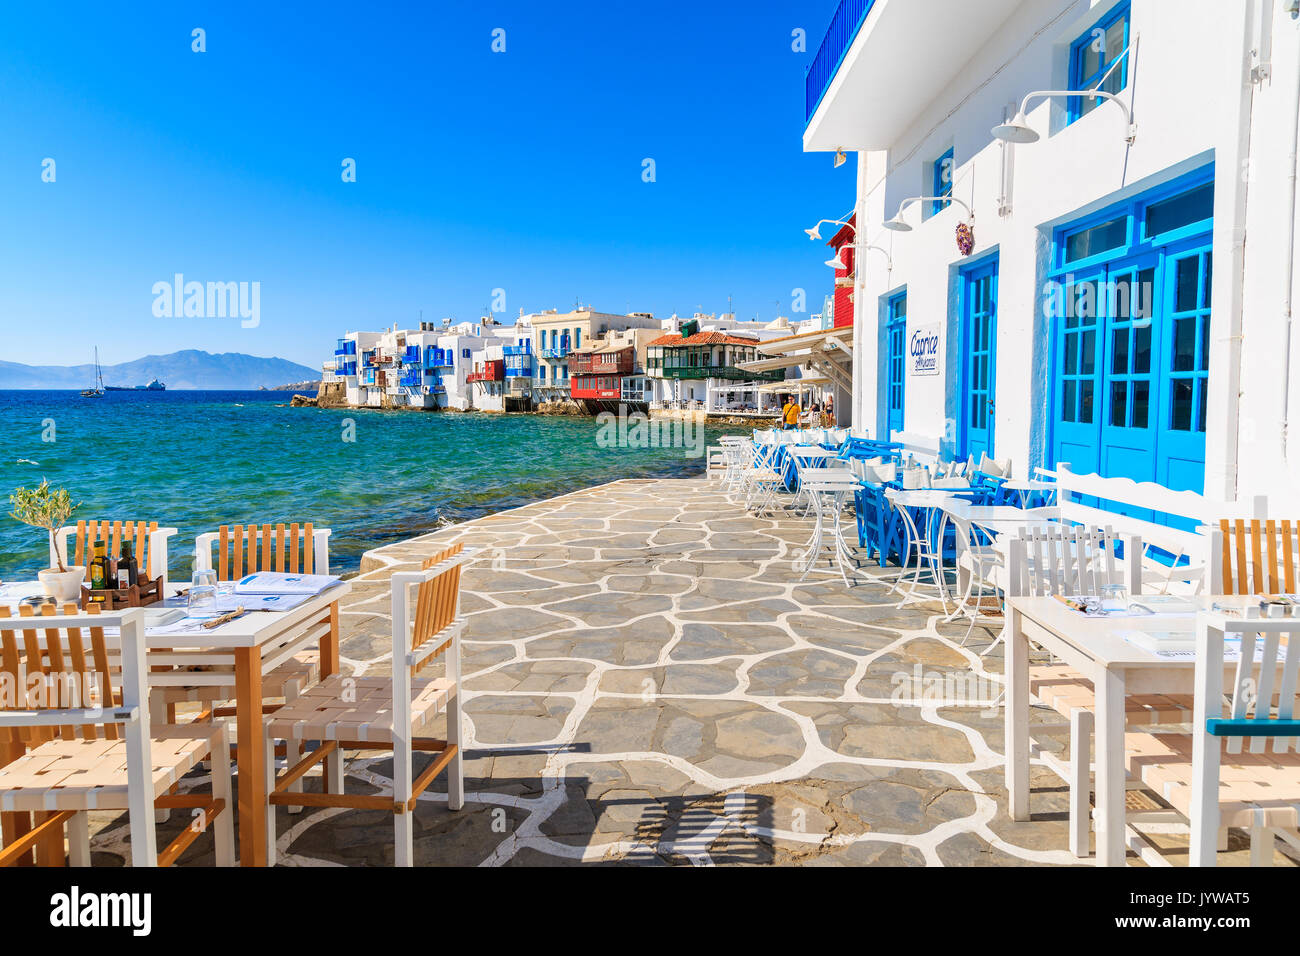 Insel Mykonos, Griechenland - 16. MAI 2016: typisch griechischen Taverne in Little Venice, ein Teil der Stadt Mykonos auf der Insel Mykonos, Griechenland. Stockfoto